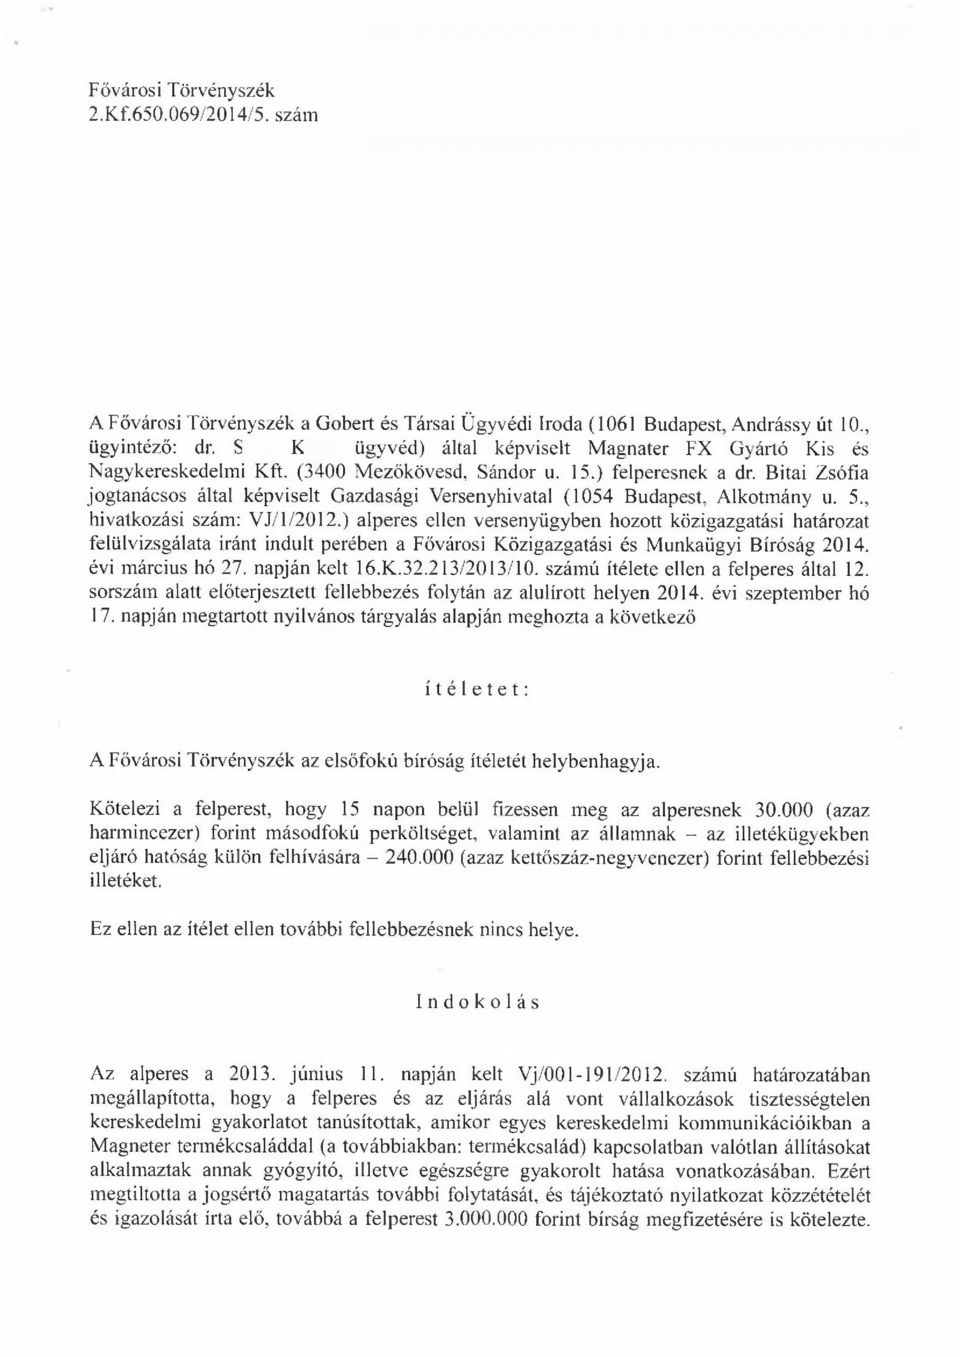 Bitai Zsófia jogtanácsos által képviselt G azdasági Versenyhivatal (1054 Budapest, A lkotm ány u. 5., hivatkozási szám: V J/1/2012.